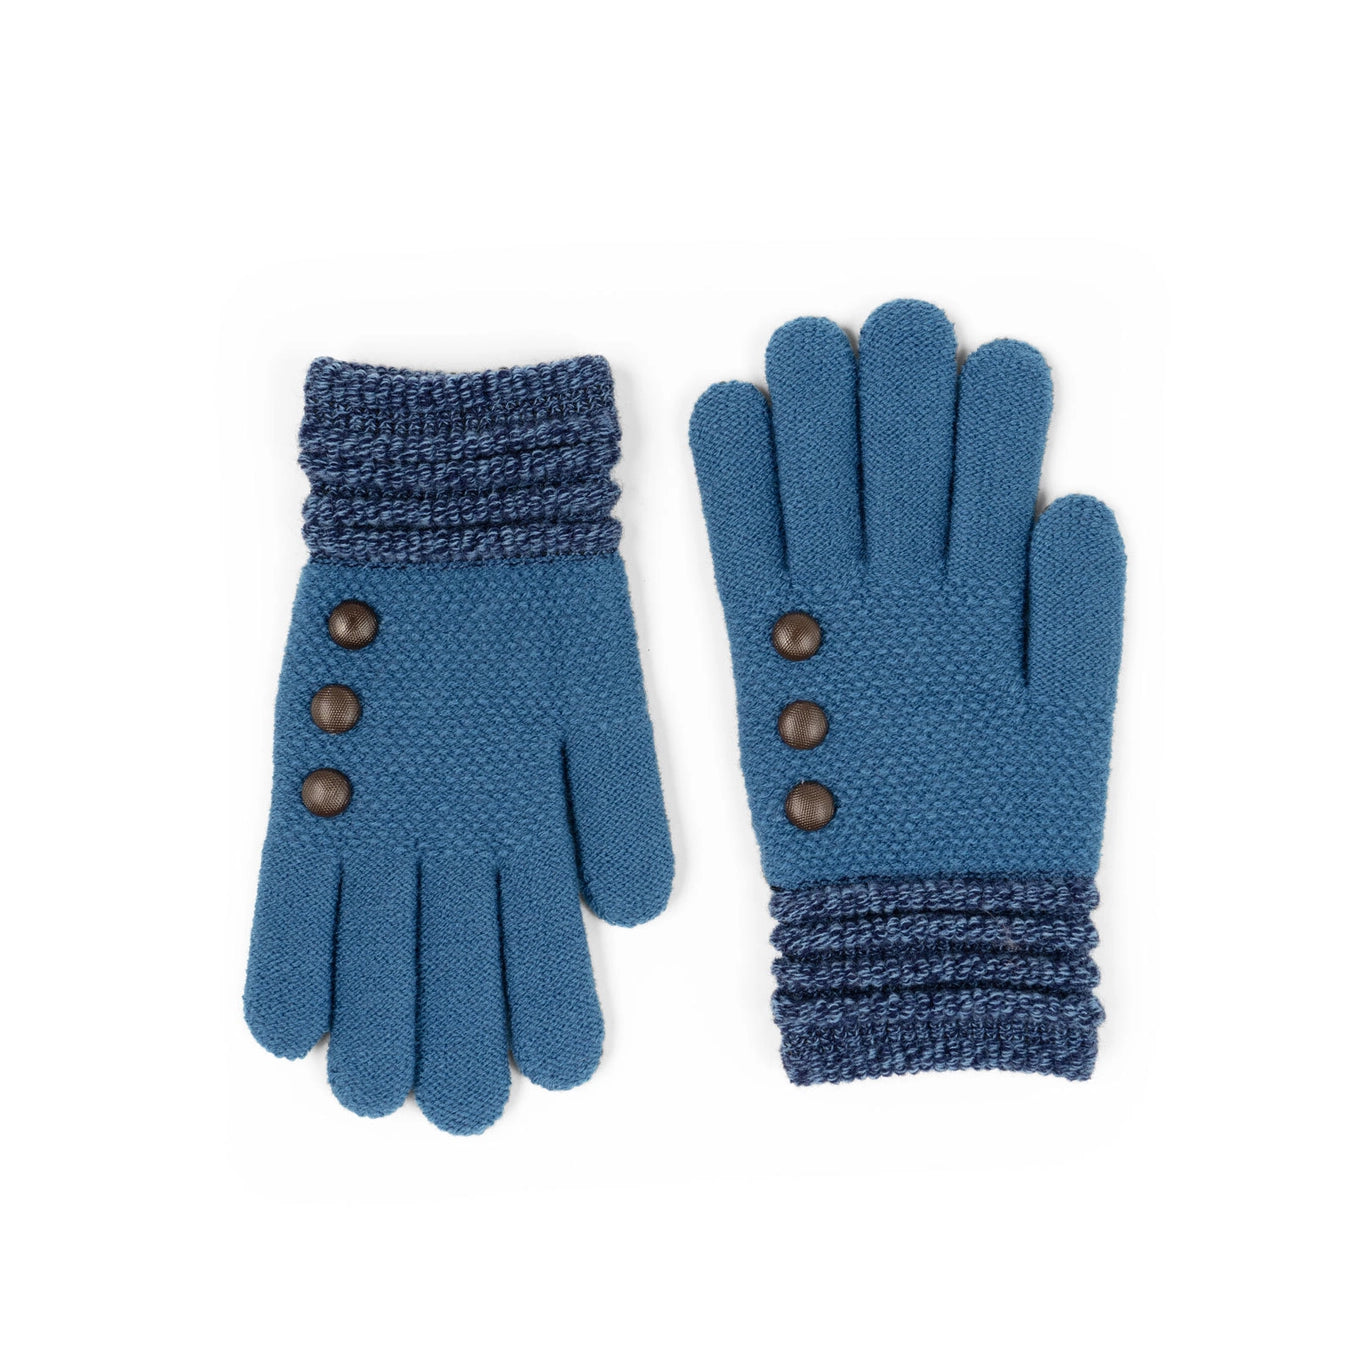 Britt's Knits Originals Gloves